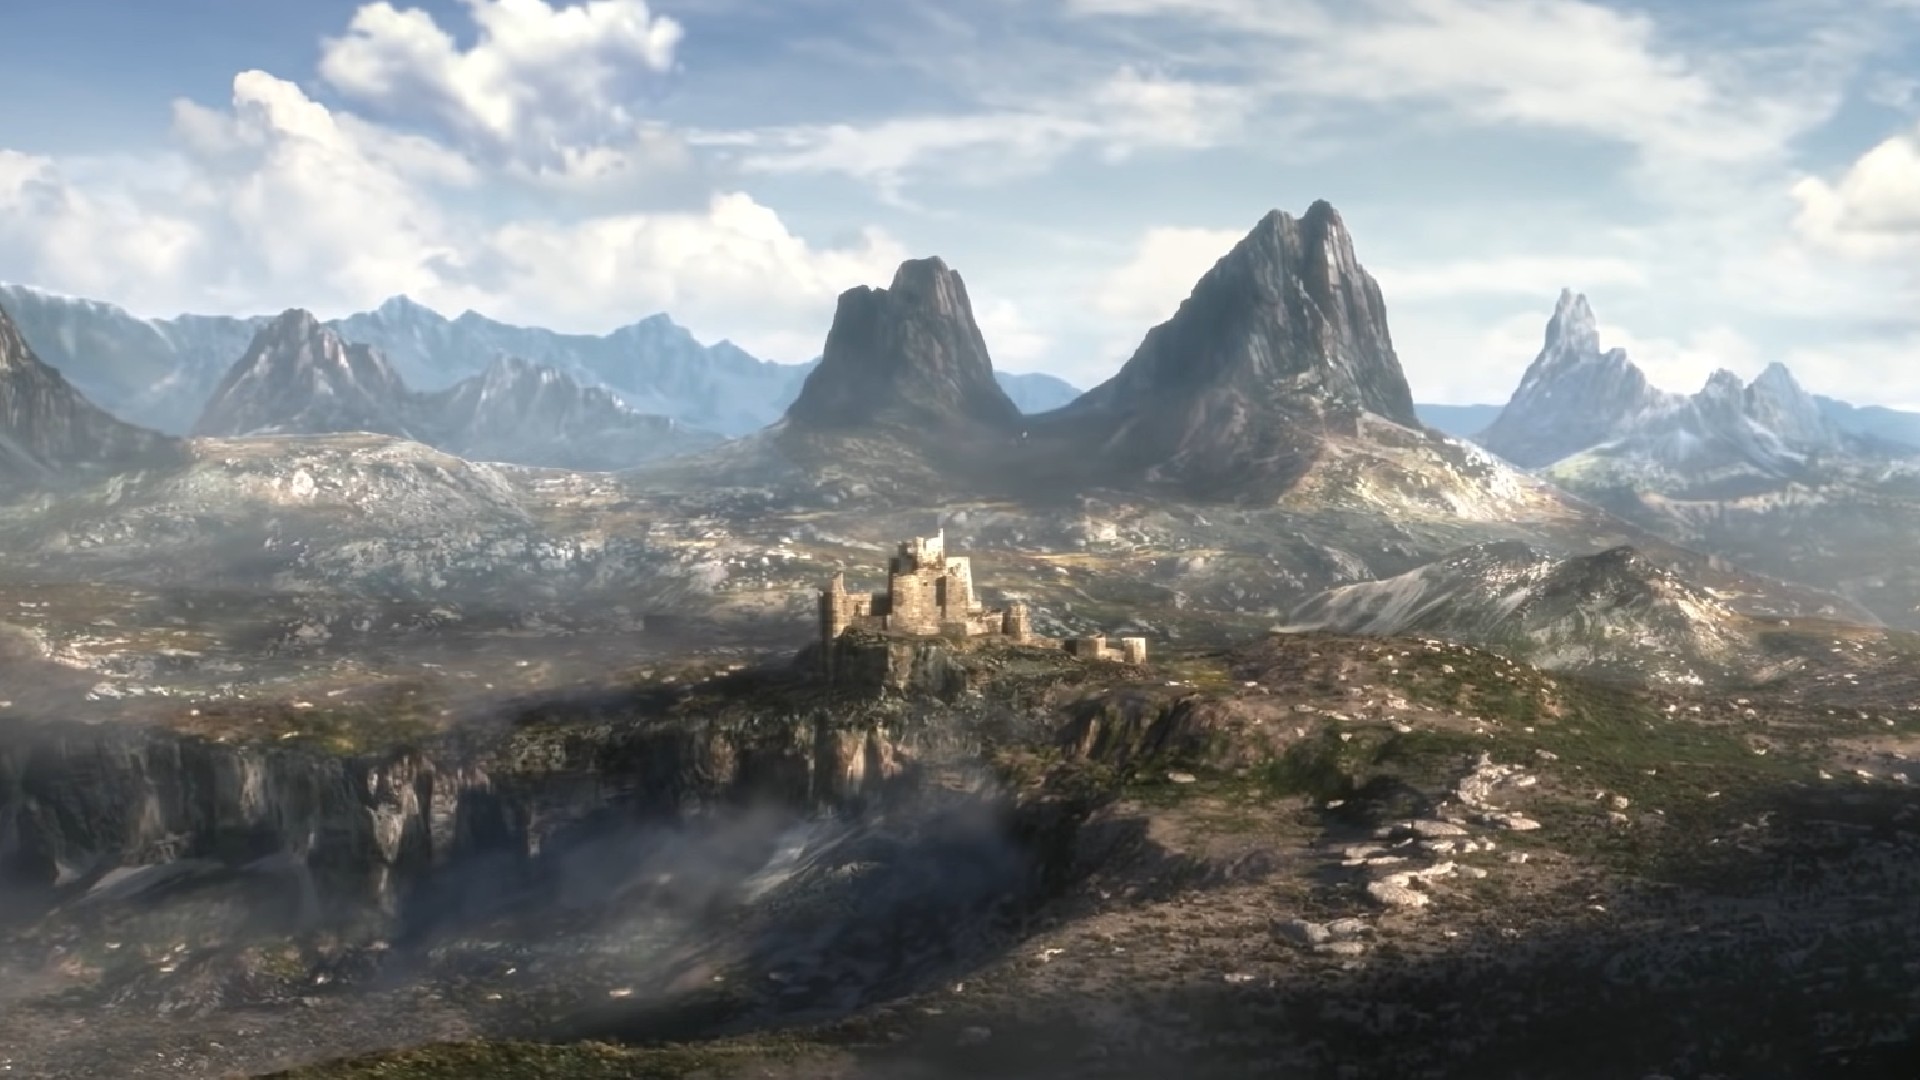 The Elder Scrolls VI não será lançado no PlayStation, afirma documento da  Microsoft